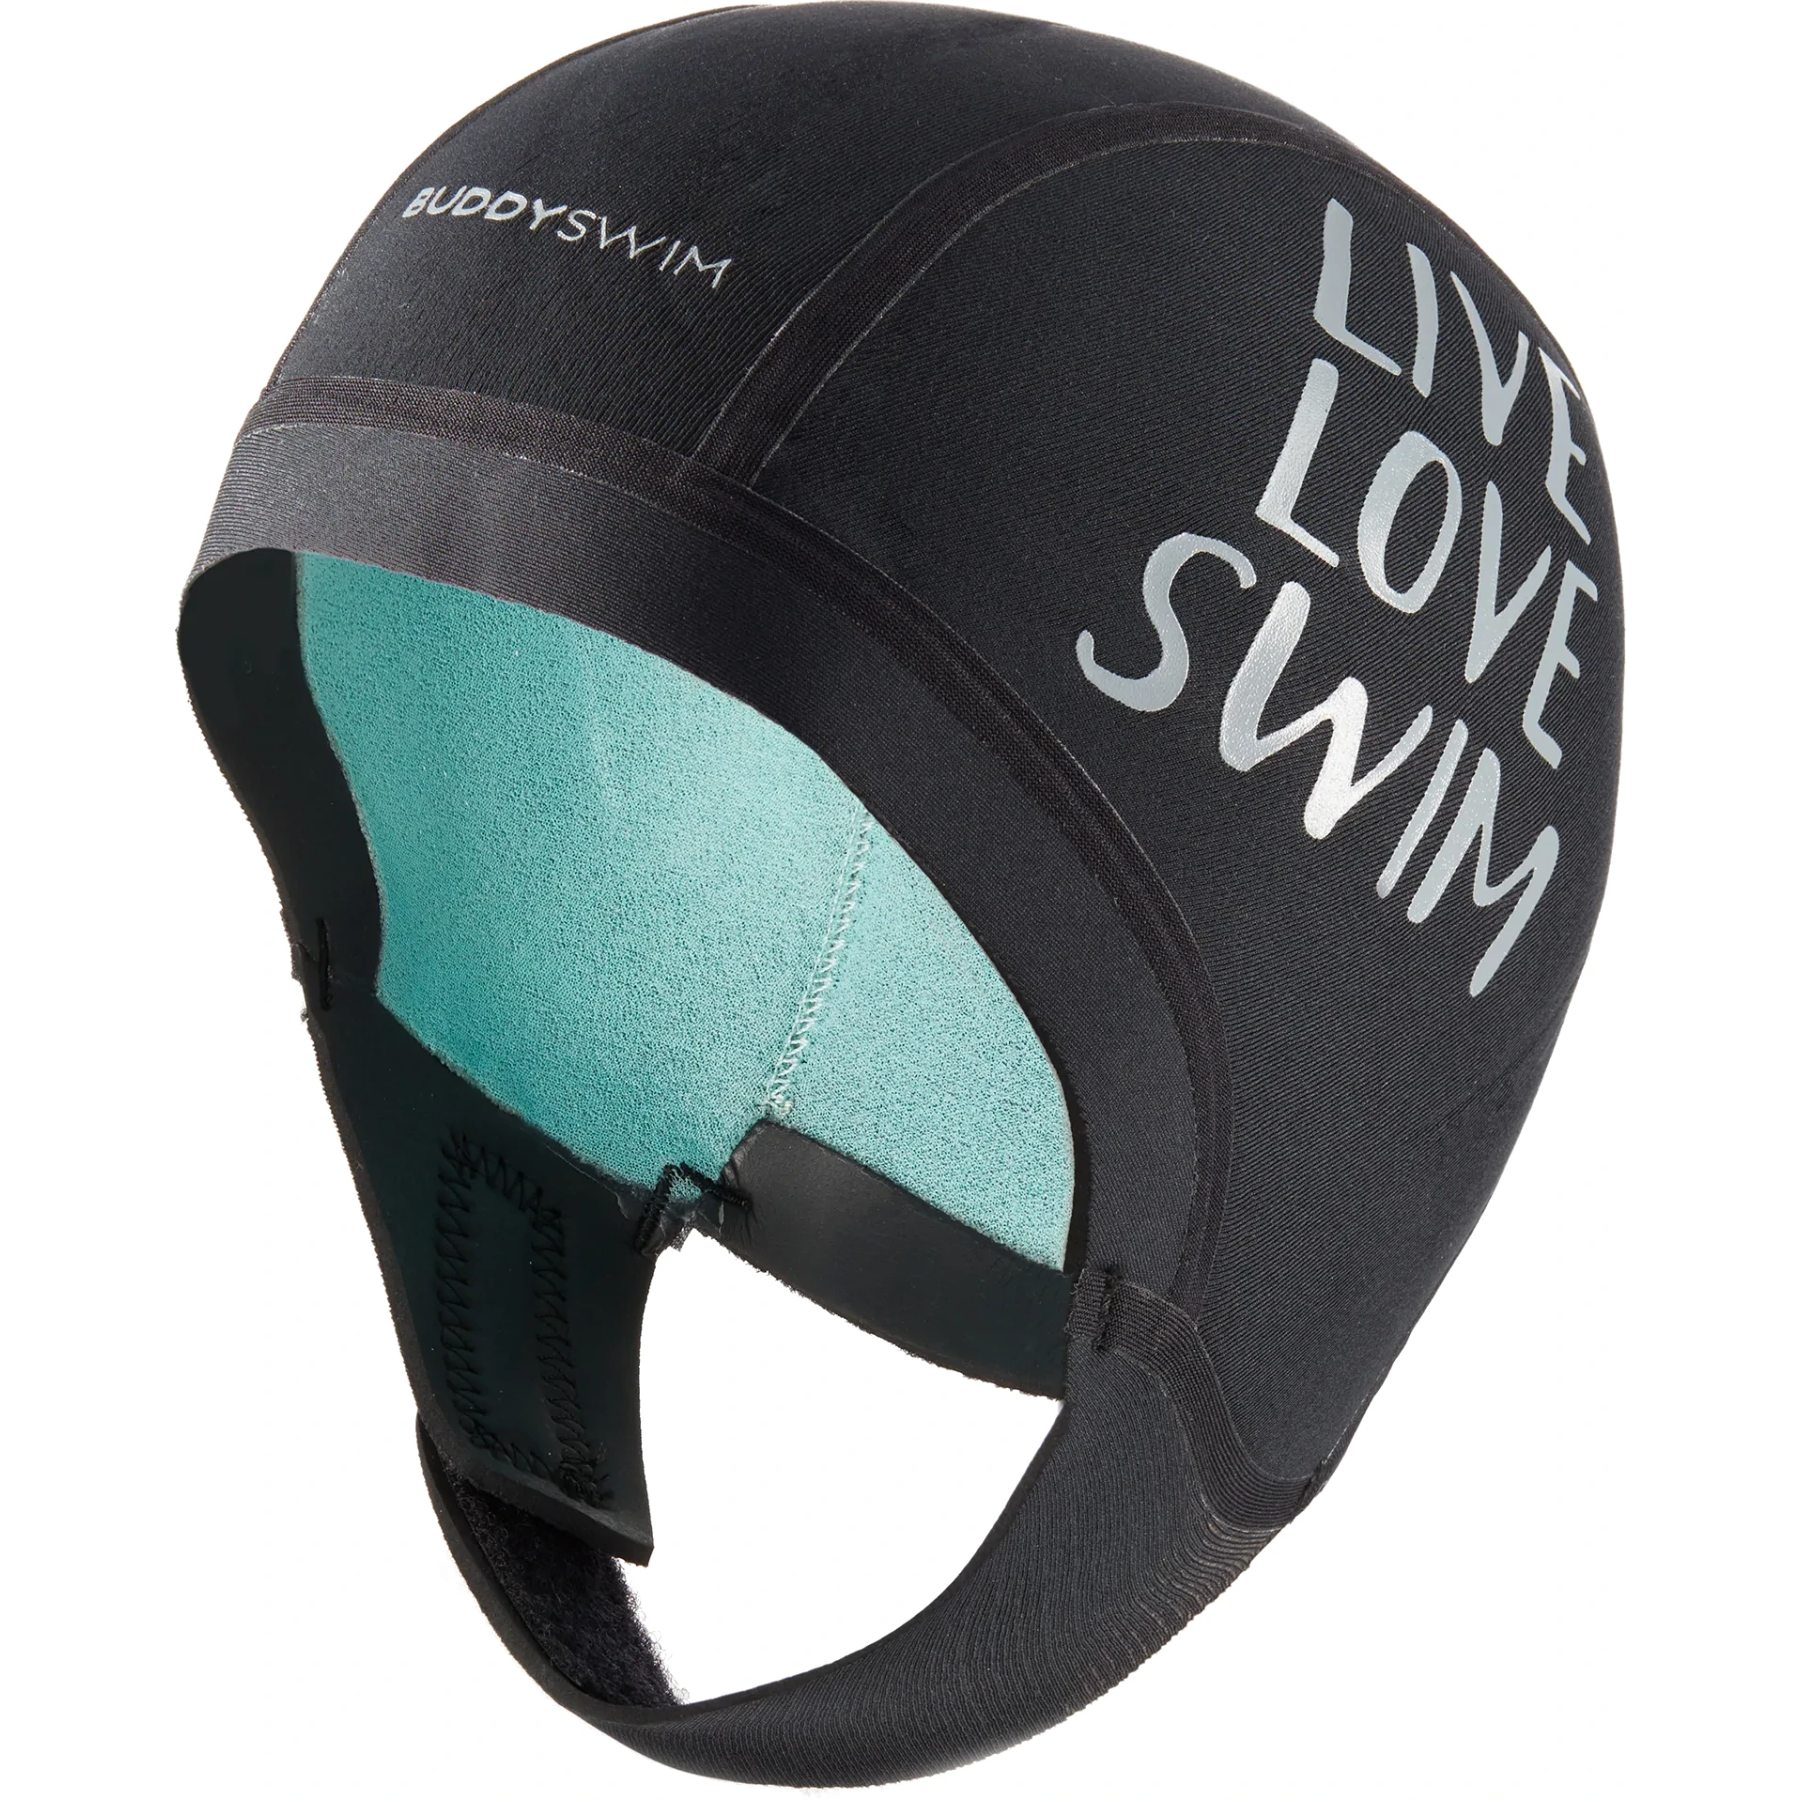 Produktbild von Buddyswim LIVE LOVE SWIM Neopren Schwimmkappe - schwarz